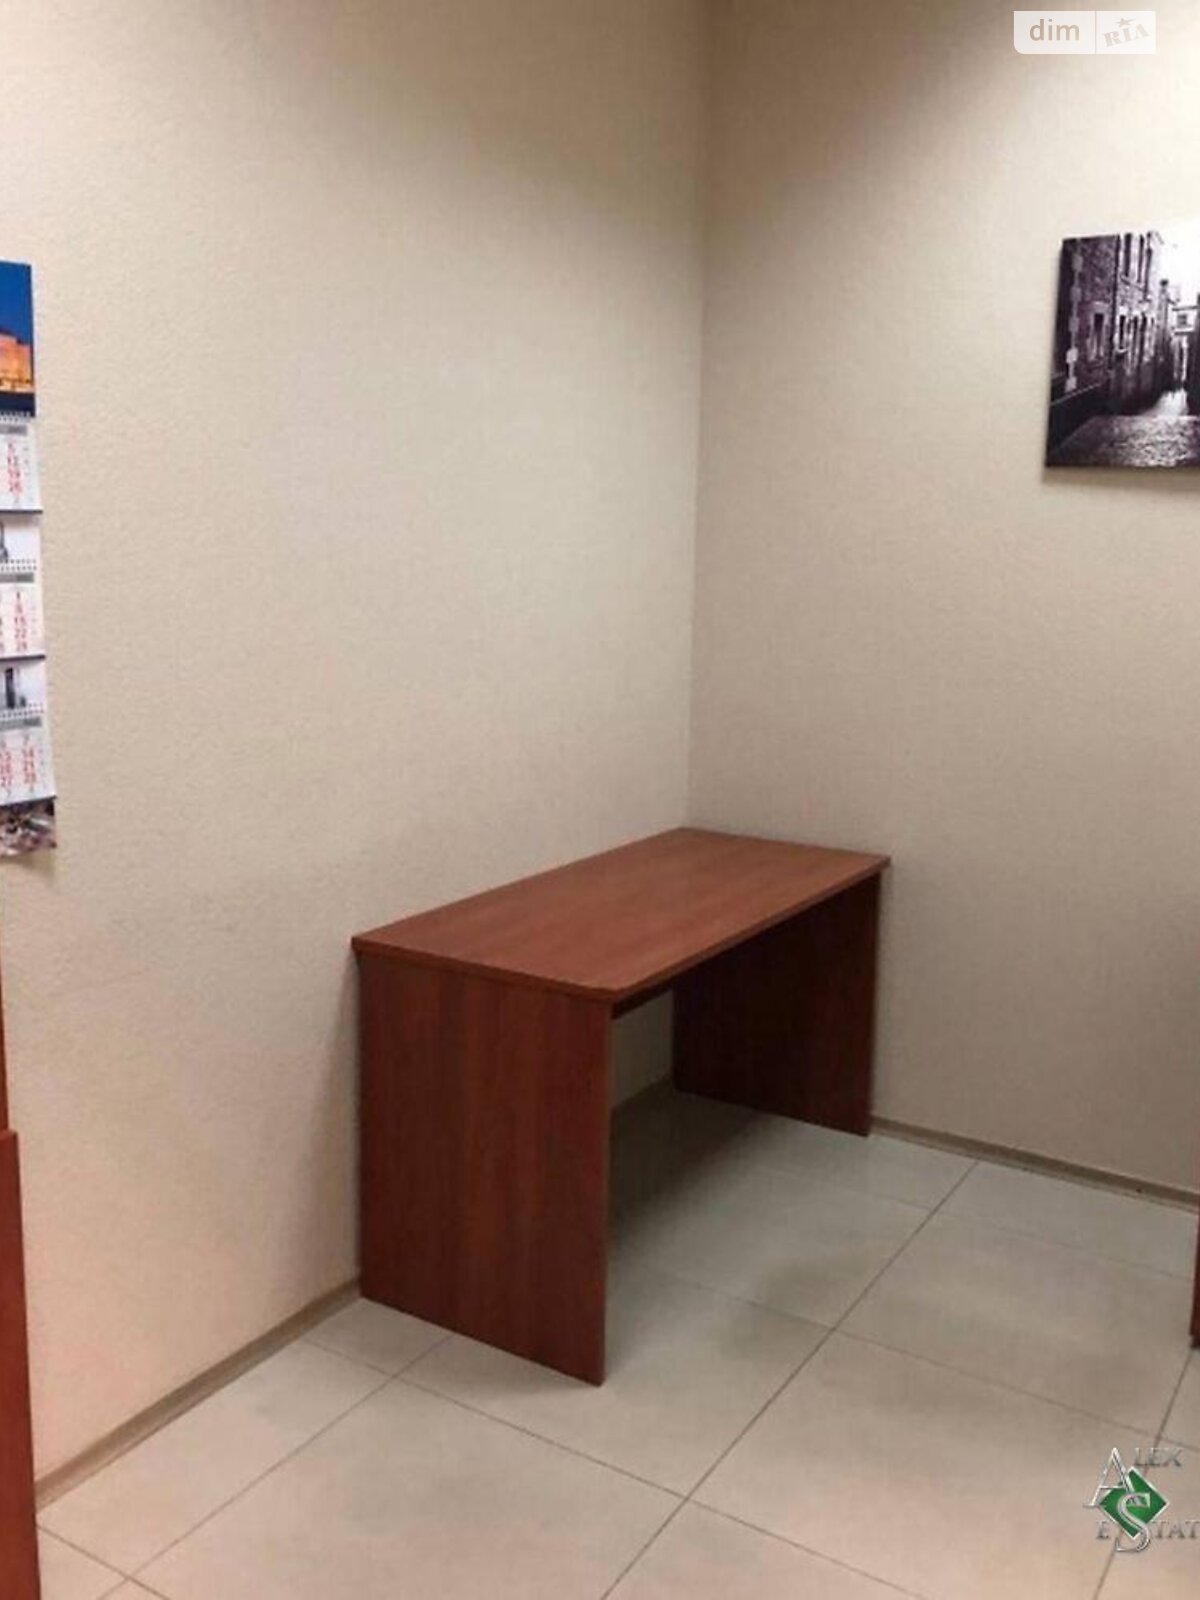 Аренда офисного помещения в Днепре, Карла Маркса проспект 5, помещений - 1, этаж - 1 фото 1